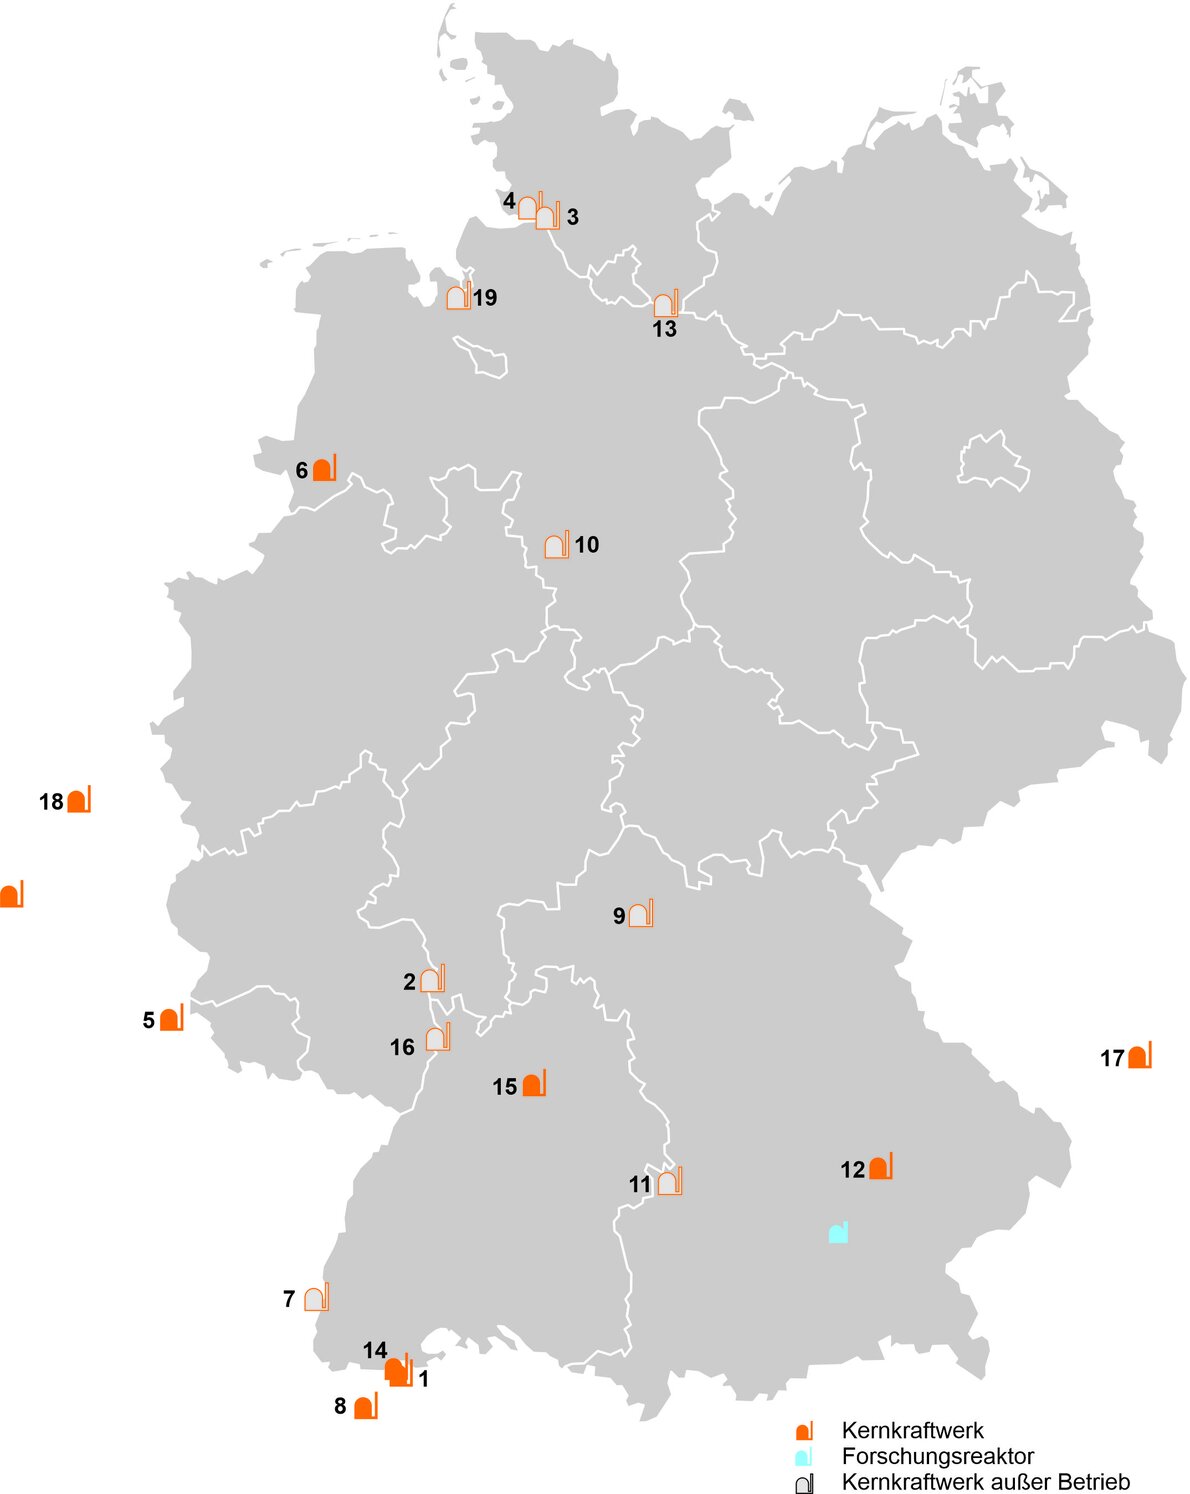 Karte von Deutschland: Es werden, die in der folgenden Auflistung aufgeführten Kernkraftwerke mit dem Umkreis von 100 Kilometern angezeigt.